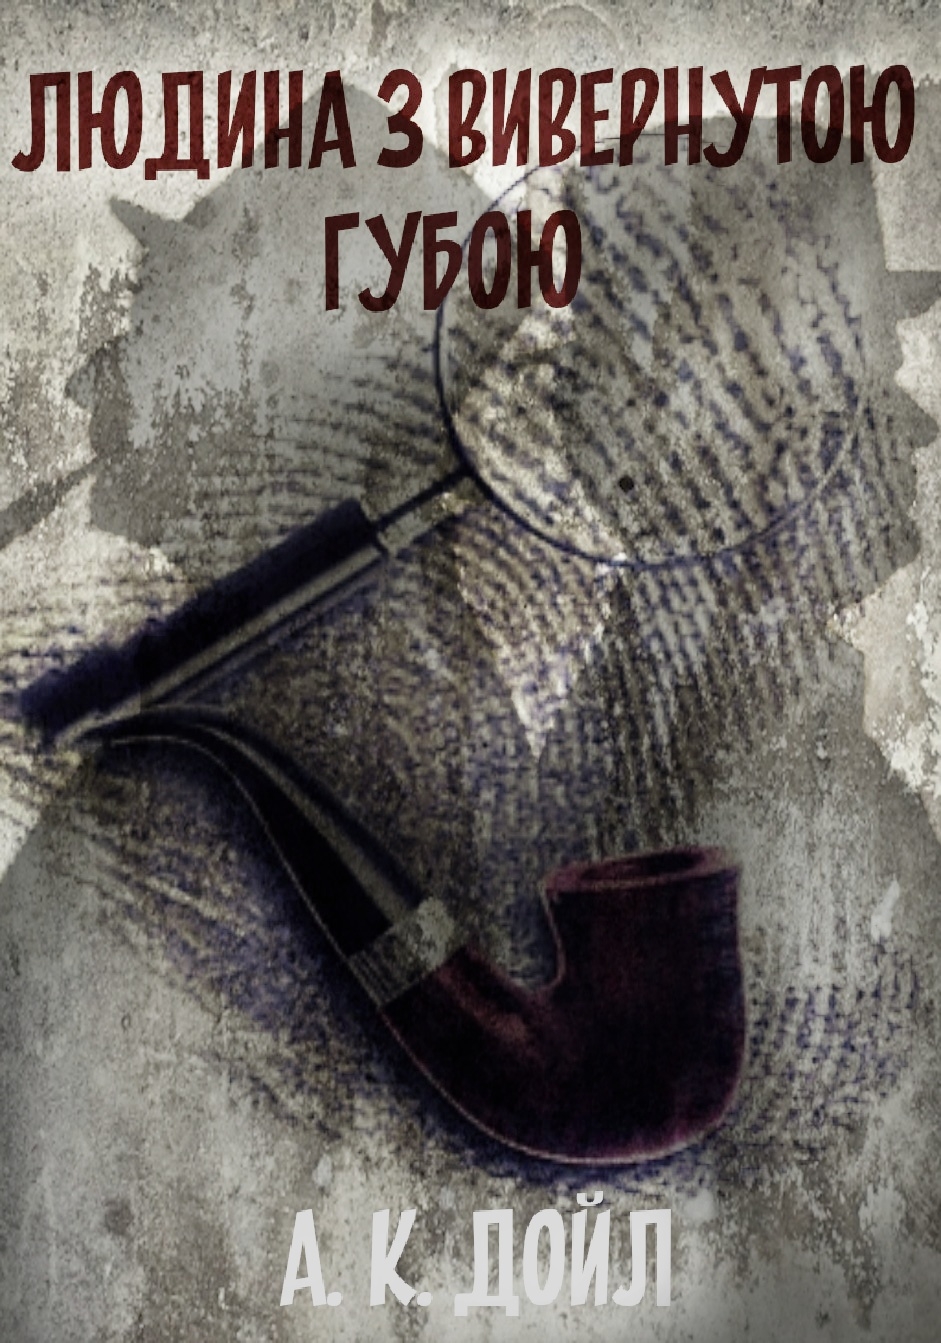 Людина з вивернутою губою - Артур Конан Дойл - Слухати Книги Українською Онлайн Безкоштовно 📘 Knigi-Audio.com/uk/